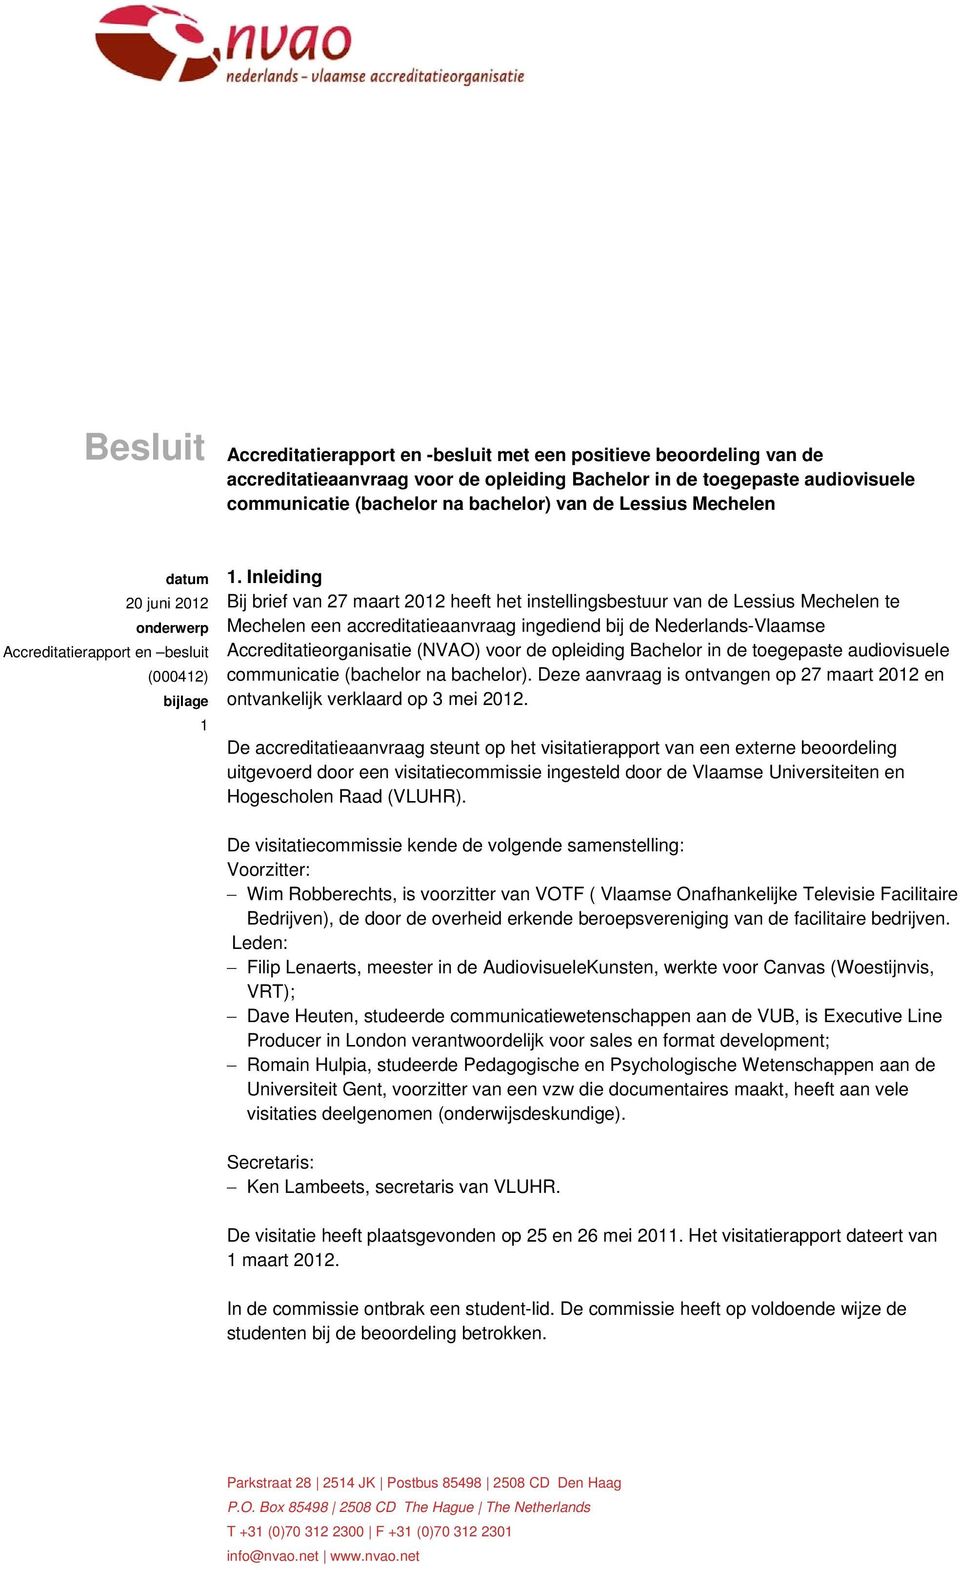 Inleiding Bij brief van 27 maart 2012 heeft het instellingsbestuur van de Lessius Mechelen te Mechelen een accreditatieaanvraag ingediend bij de Nederlands-Vlaamse Accreditatieorganisatie (NVAO) voor